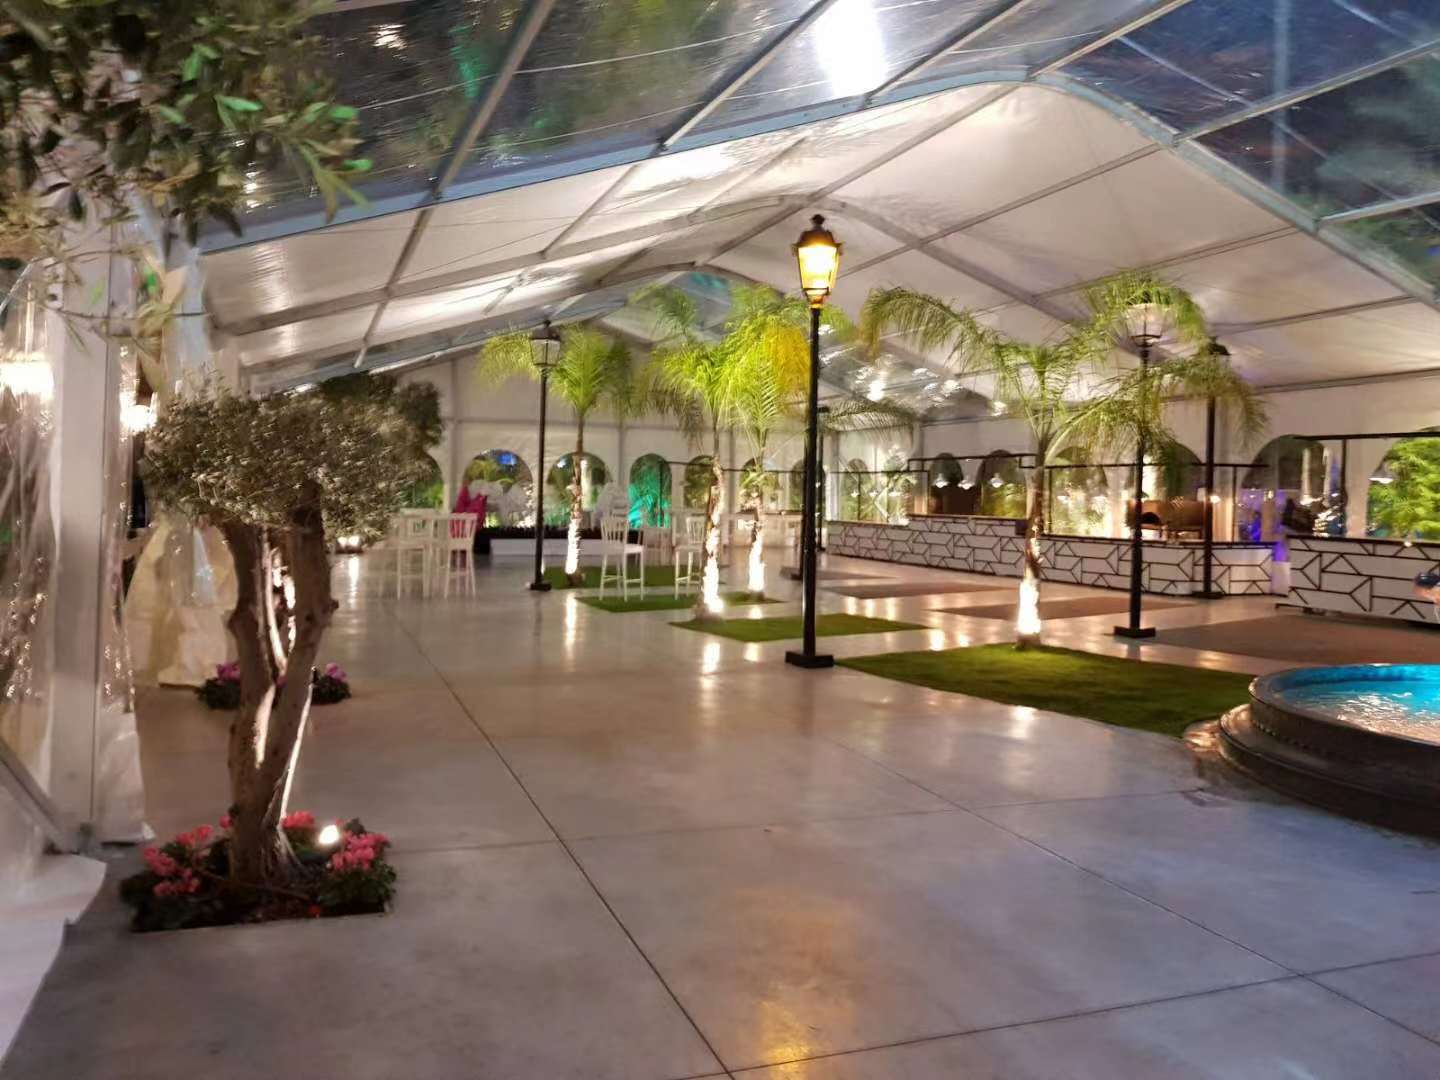 COSCO aluminum event tent elegant rain-proof